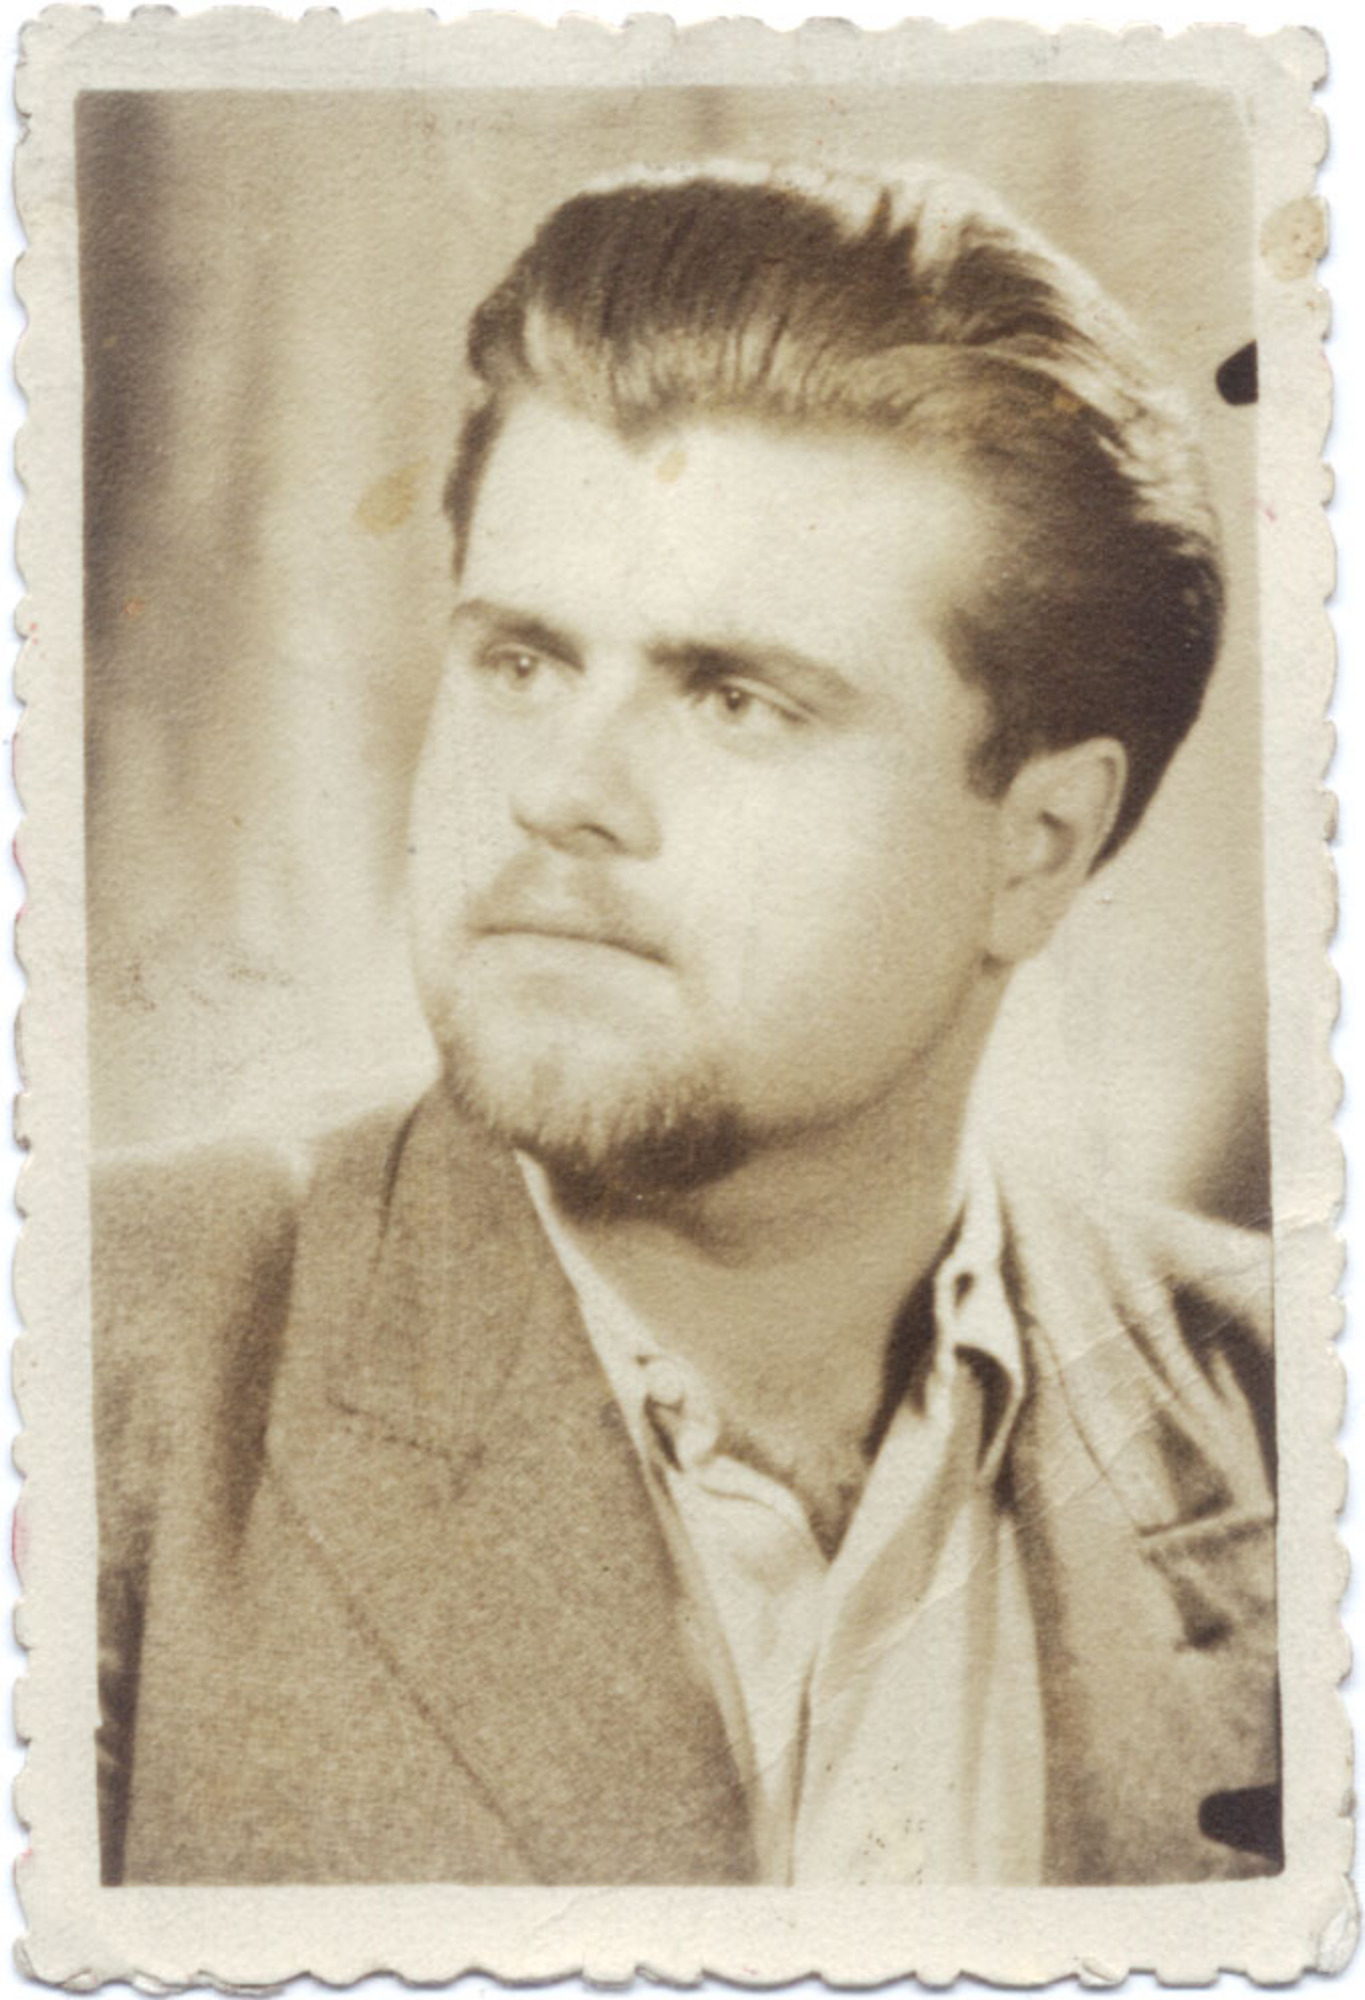 Zdeněk Dittrich in 1946